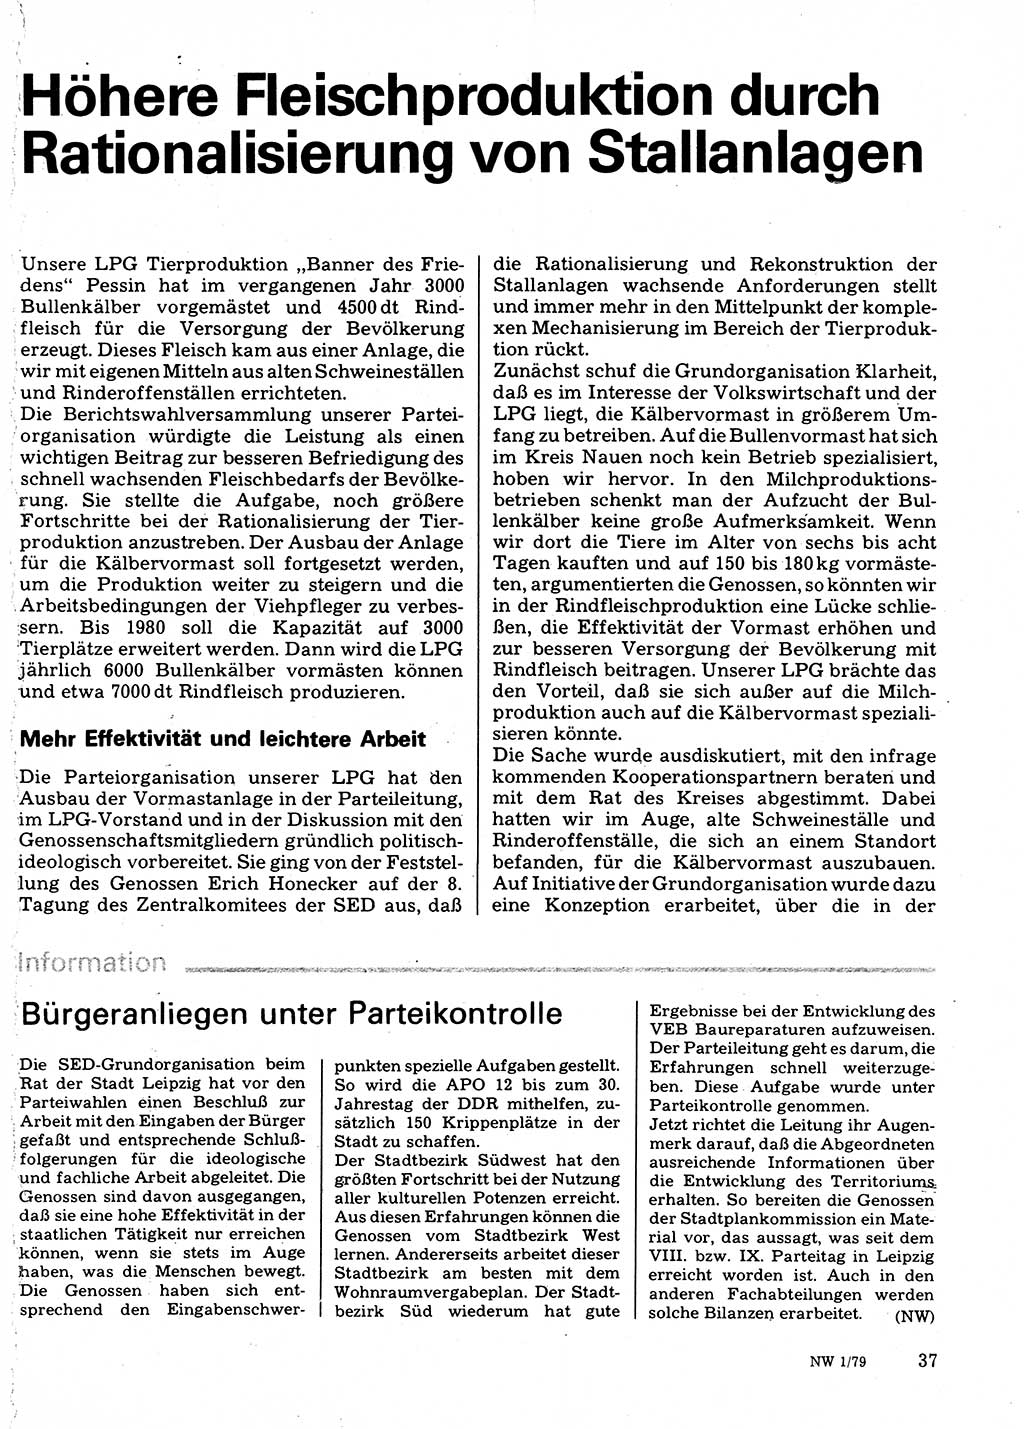 Neuer Weg (NW), Organ des Zentralkomitees (ZK) der SED (Sozialistische Einheitspartei Deutschlands) für Fragen des Parteilebens, 34. Jahrgang [Deutsche Demokratische Republik (DDR)] 1979, Seite 37 (NW ZK SED DDR 1979, S. 37)